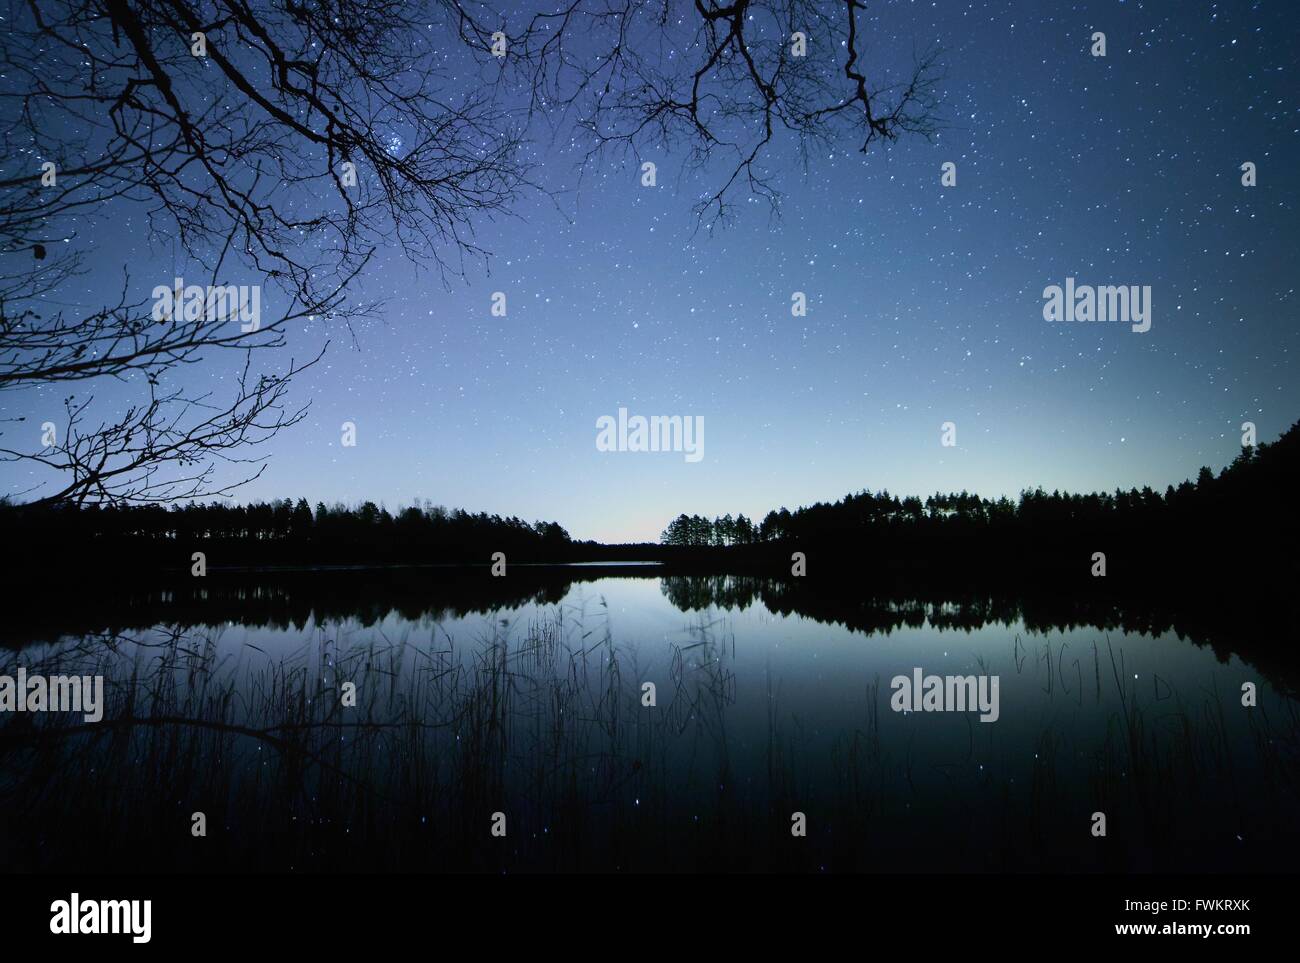 Ruhige Nachtszene mit Sternenhimmel an einem See in Finnland. Reflexion der Sterne auf das Stille Wasser des Sees. Stockfoto